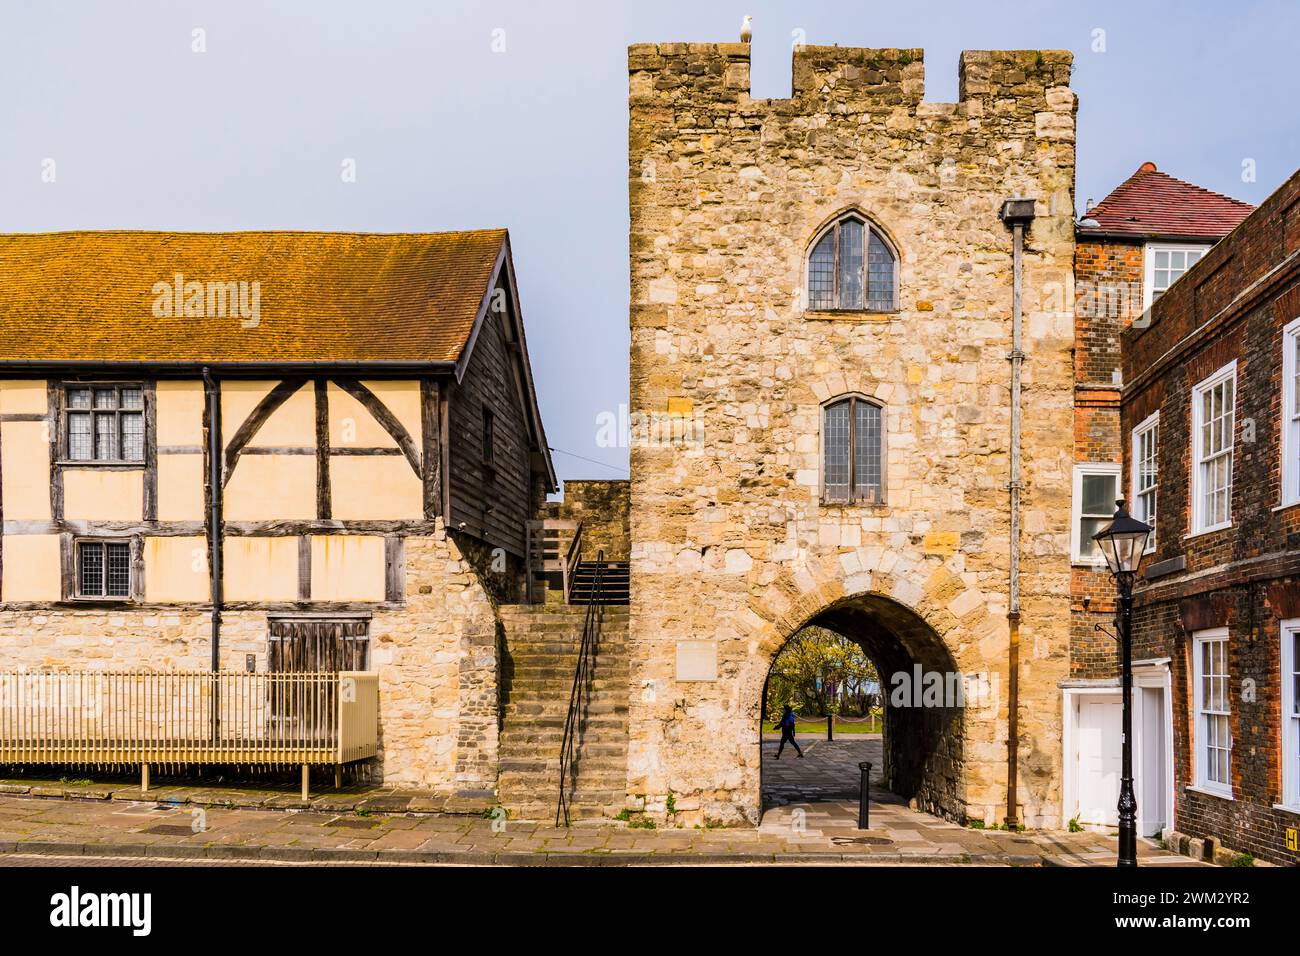 Westgate nelle mura della città vecchia (R) e Westgate Hall (L), vista dall'interno. Southampton, Hampshire, Inghilterra, Regno Unito, Regno Unito, Europa Foto Stock